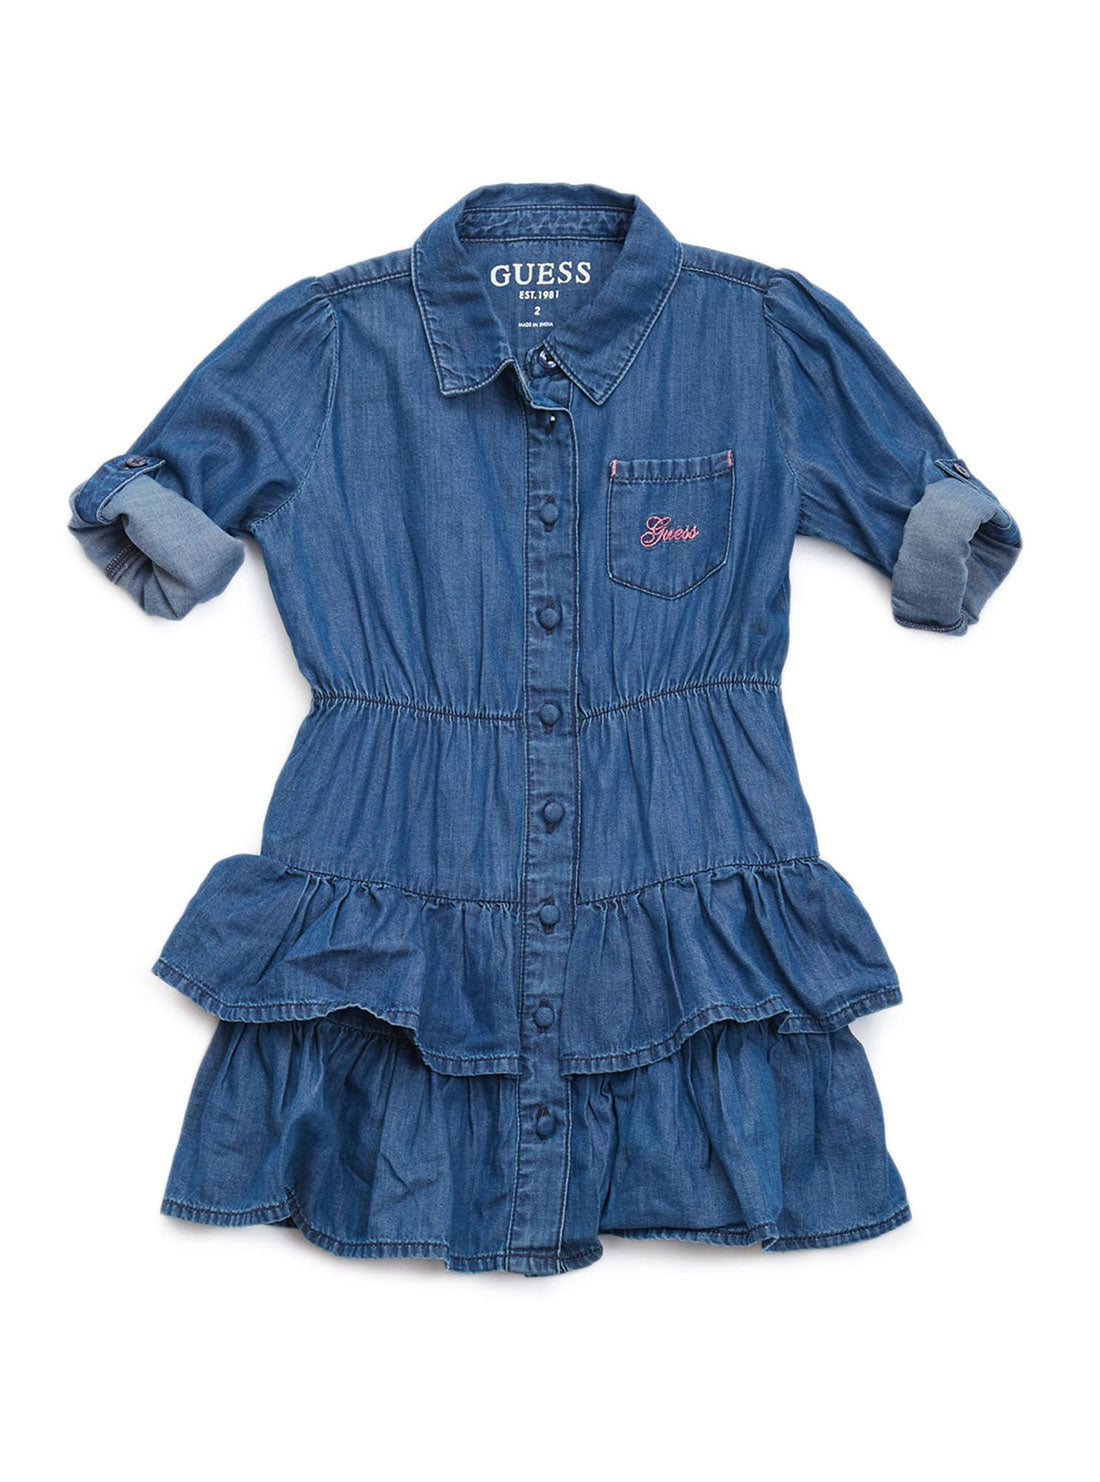 GUESS Little Girl Blue Denim Lace Dress (2-7) K2YK19D4NK0 Front View